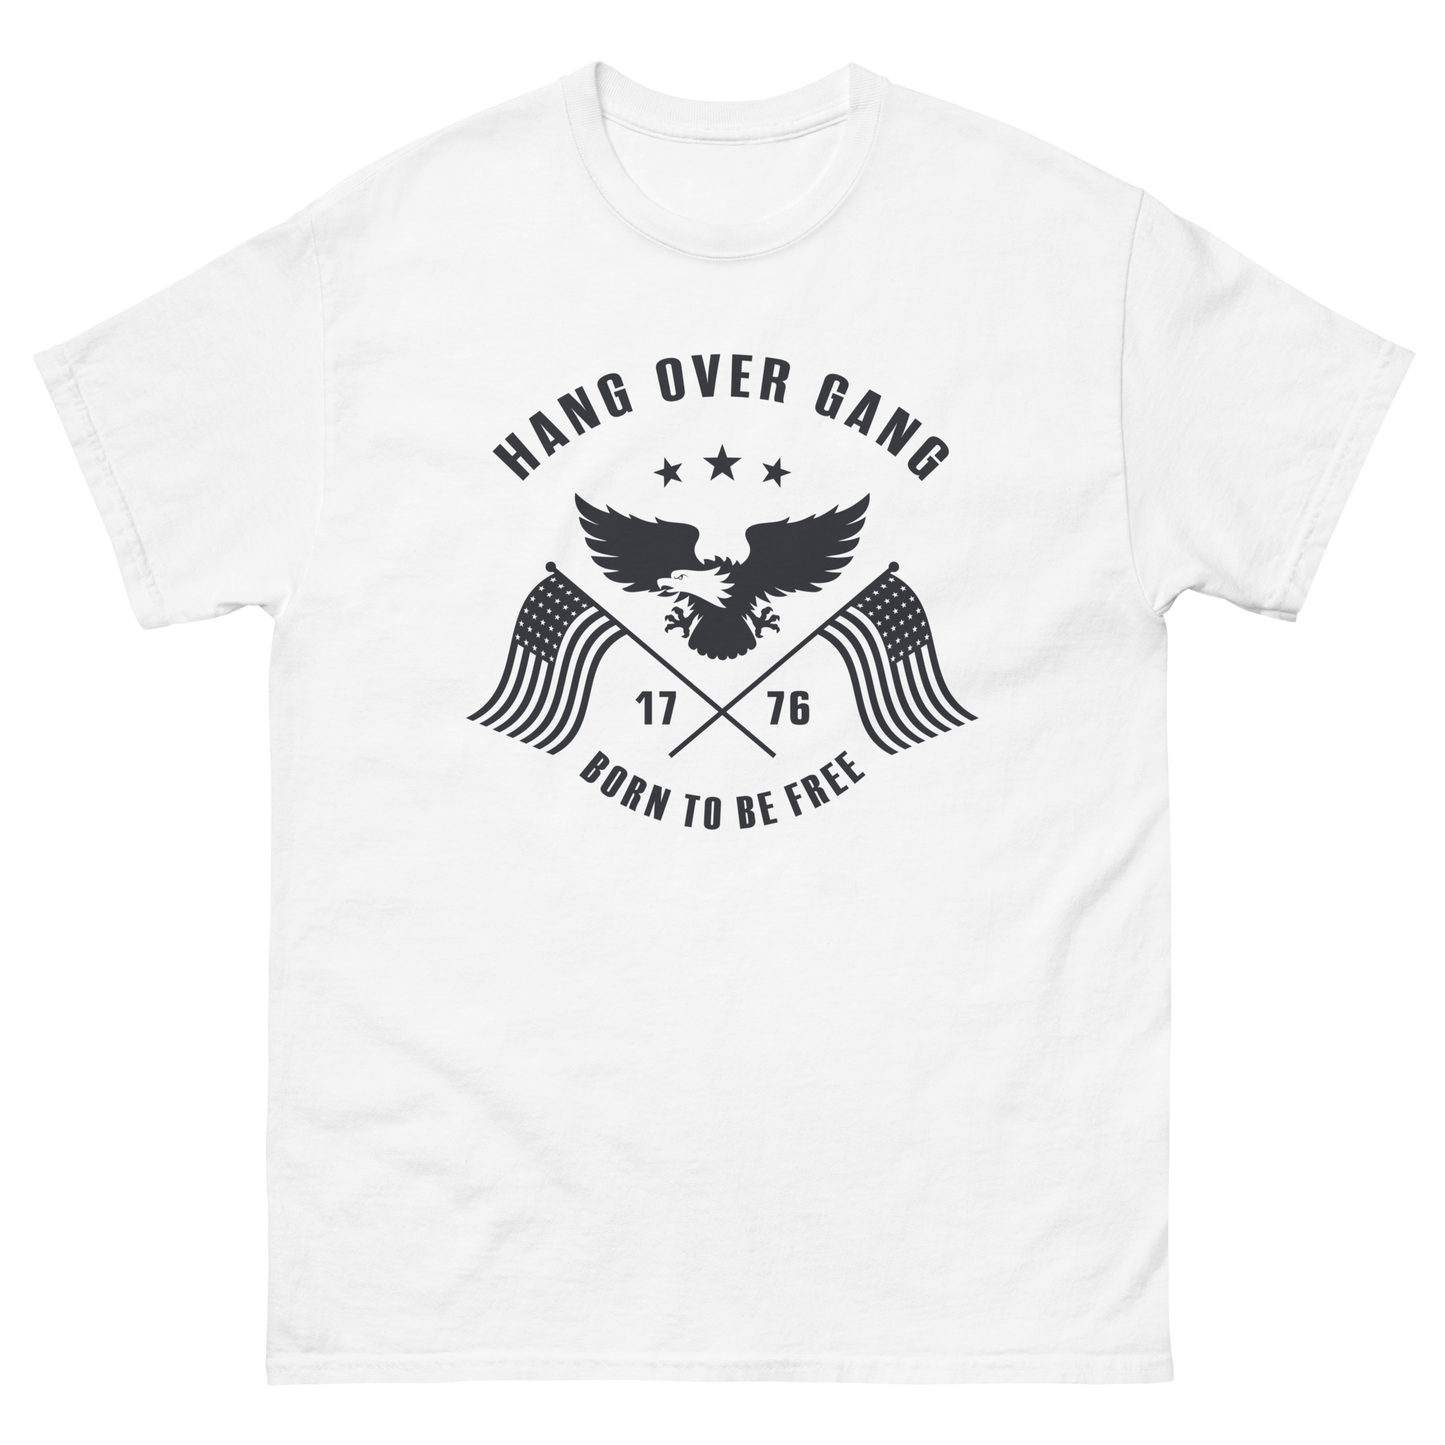 "Hang Over Gang" T-Shirt